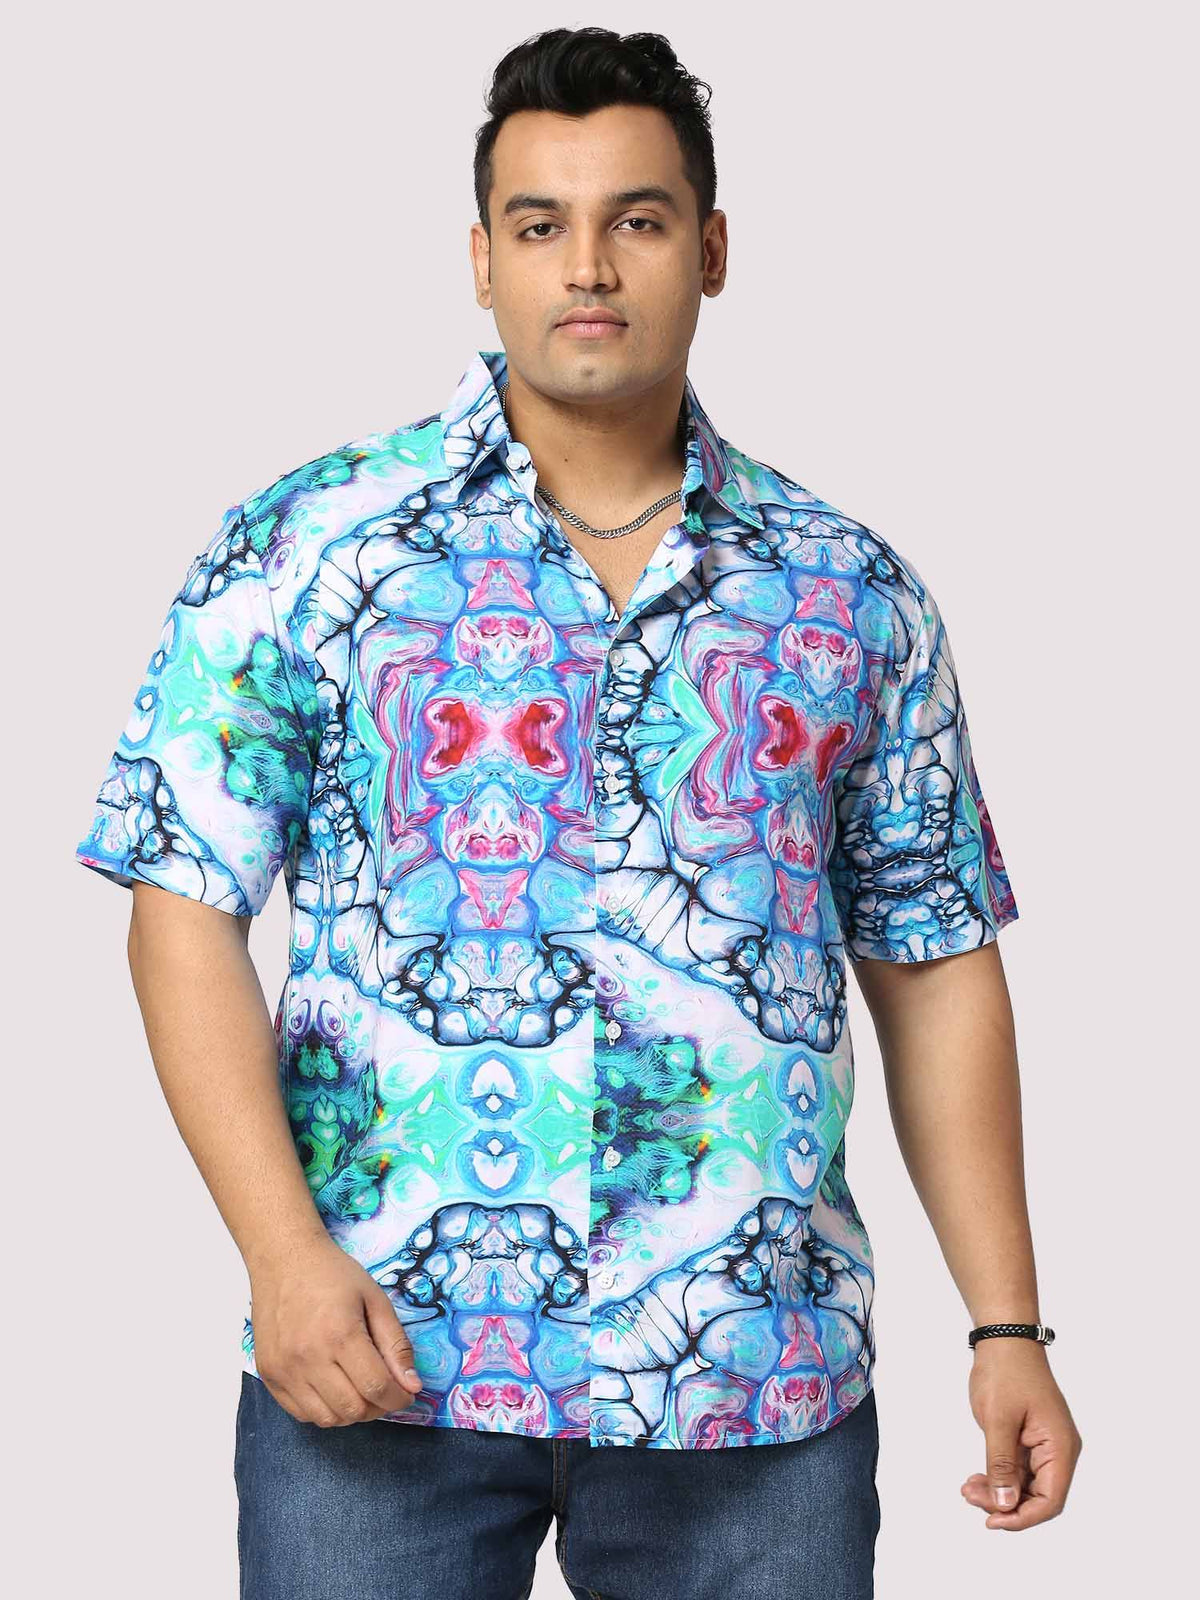 Trance Digital Printed Half Shirt Men's Plus Size - Guniaa Fashions